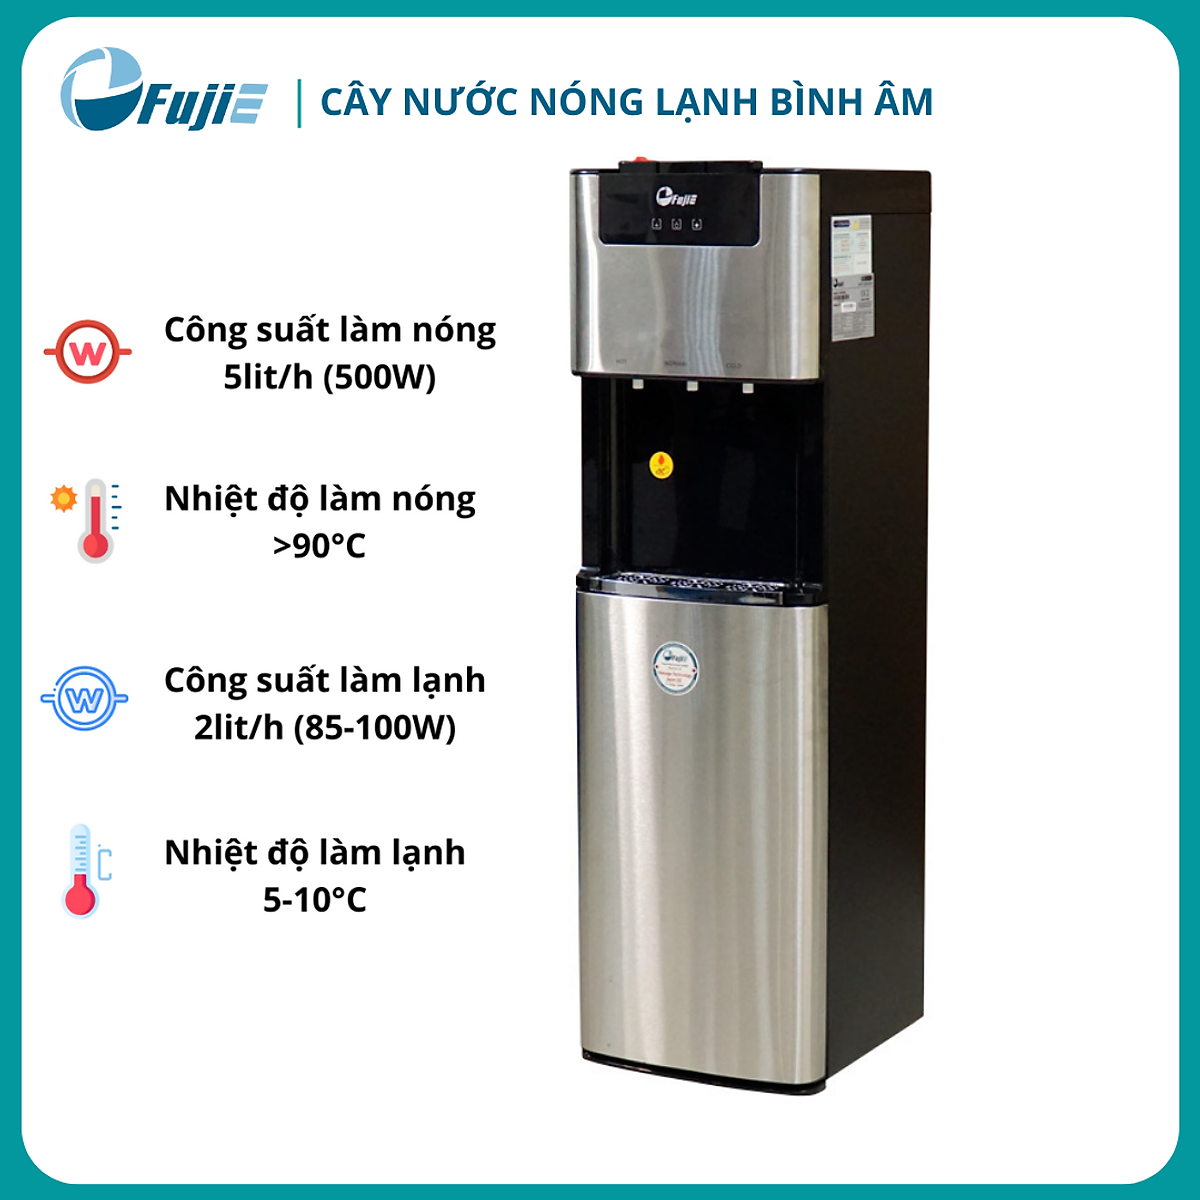 Cây nước nóng lạnh bình âm cao cấp FujiE WD7500C - Hàng chính hãng